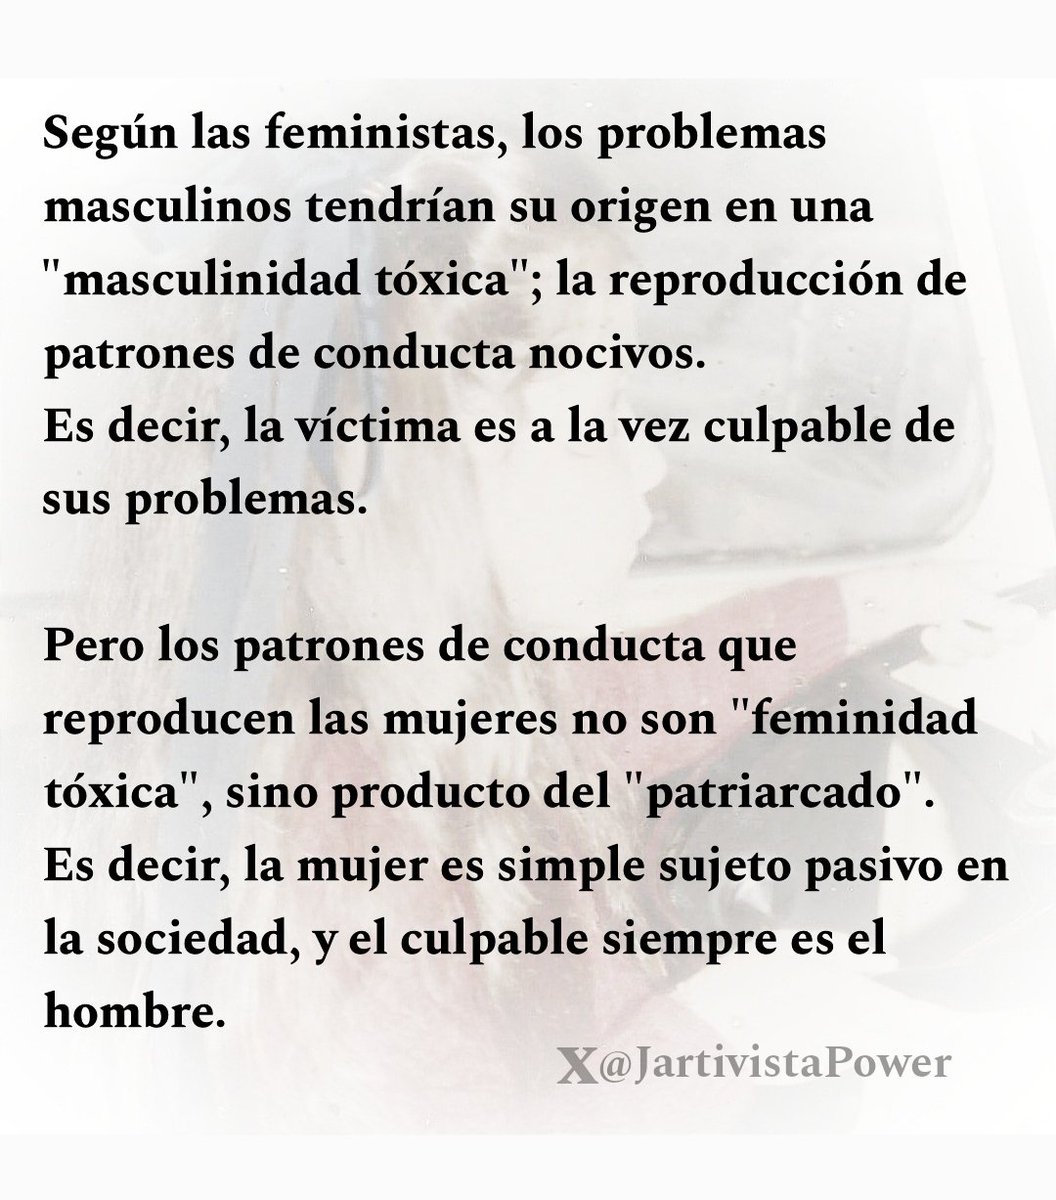 @CapitanBitcoin Con el FEMINISMO hoy en día no hay igualdad jurídica⚖️👫

La mujer tiene privilegios por encima del hombre ✅👩

⏰⏰ VAMOS A DESPERTAR ⏰⏰

#FeminismoEsCancer 🔴😷

twitter.com/alvaros77/stat…